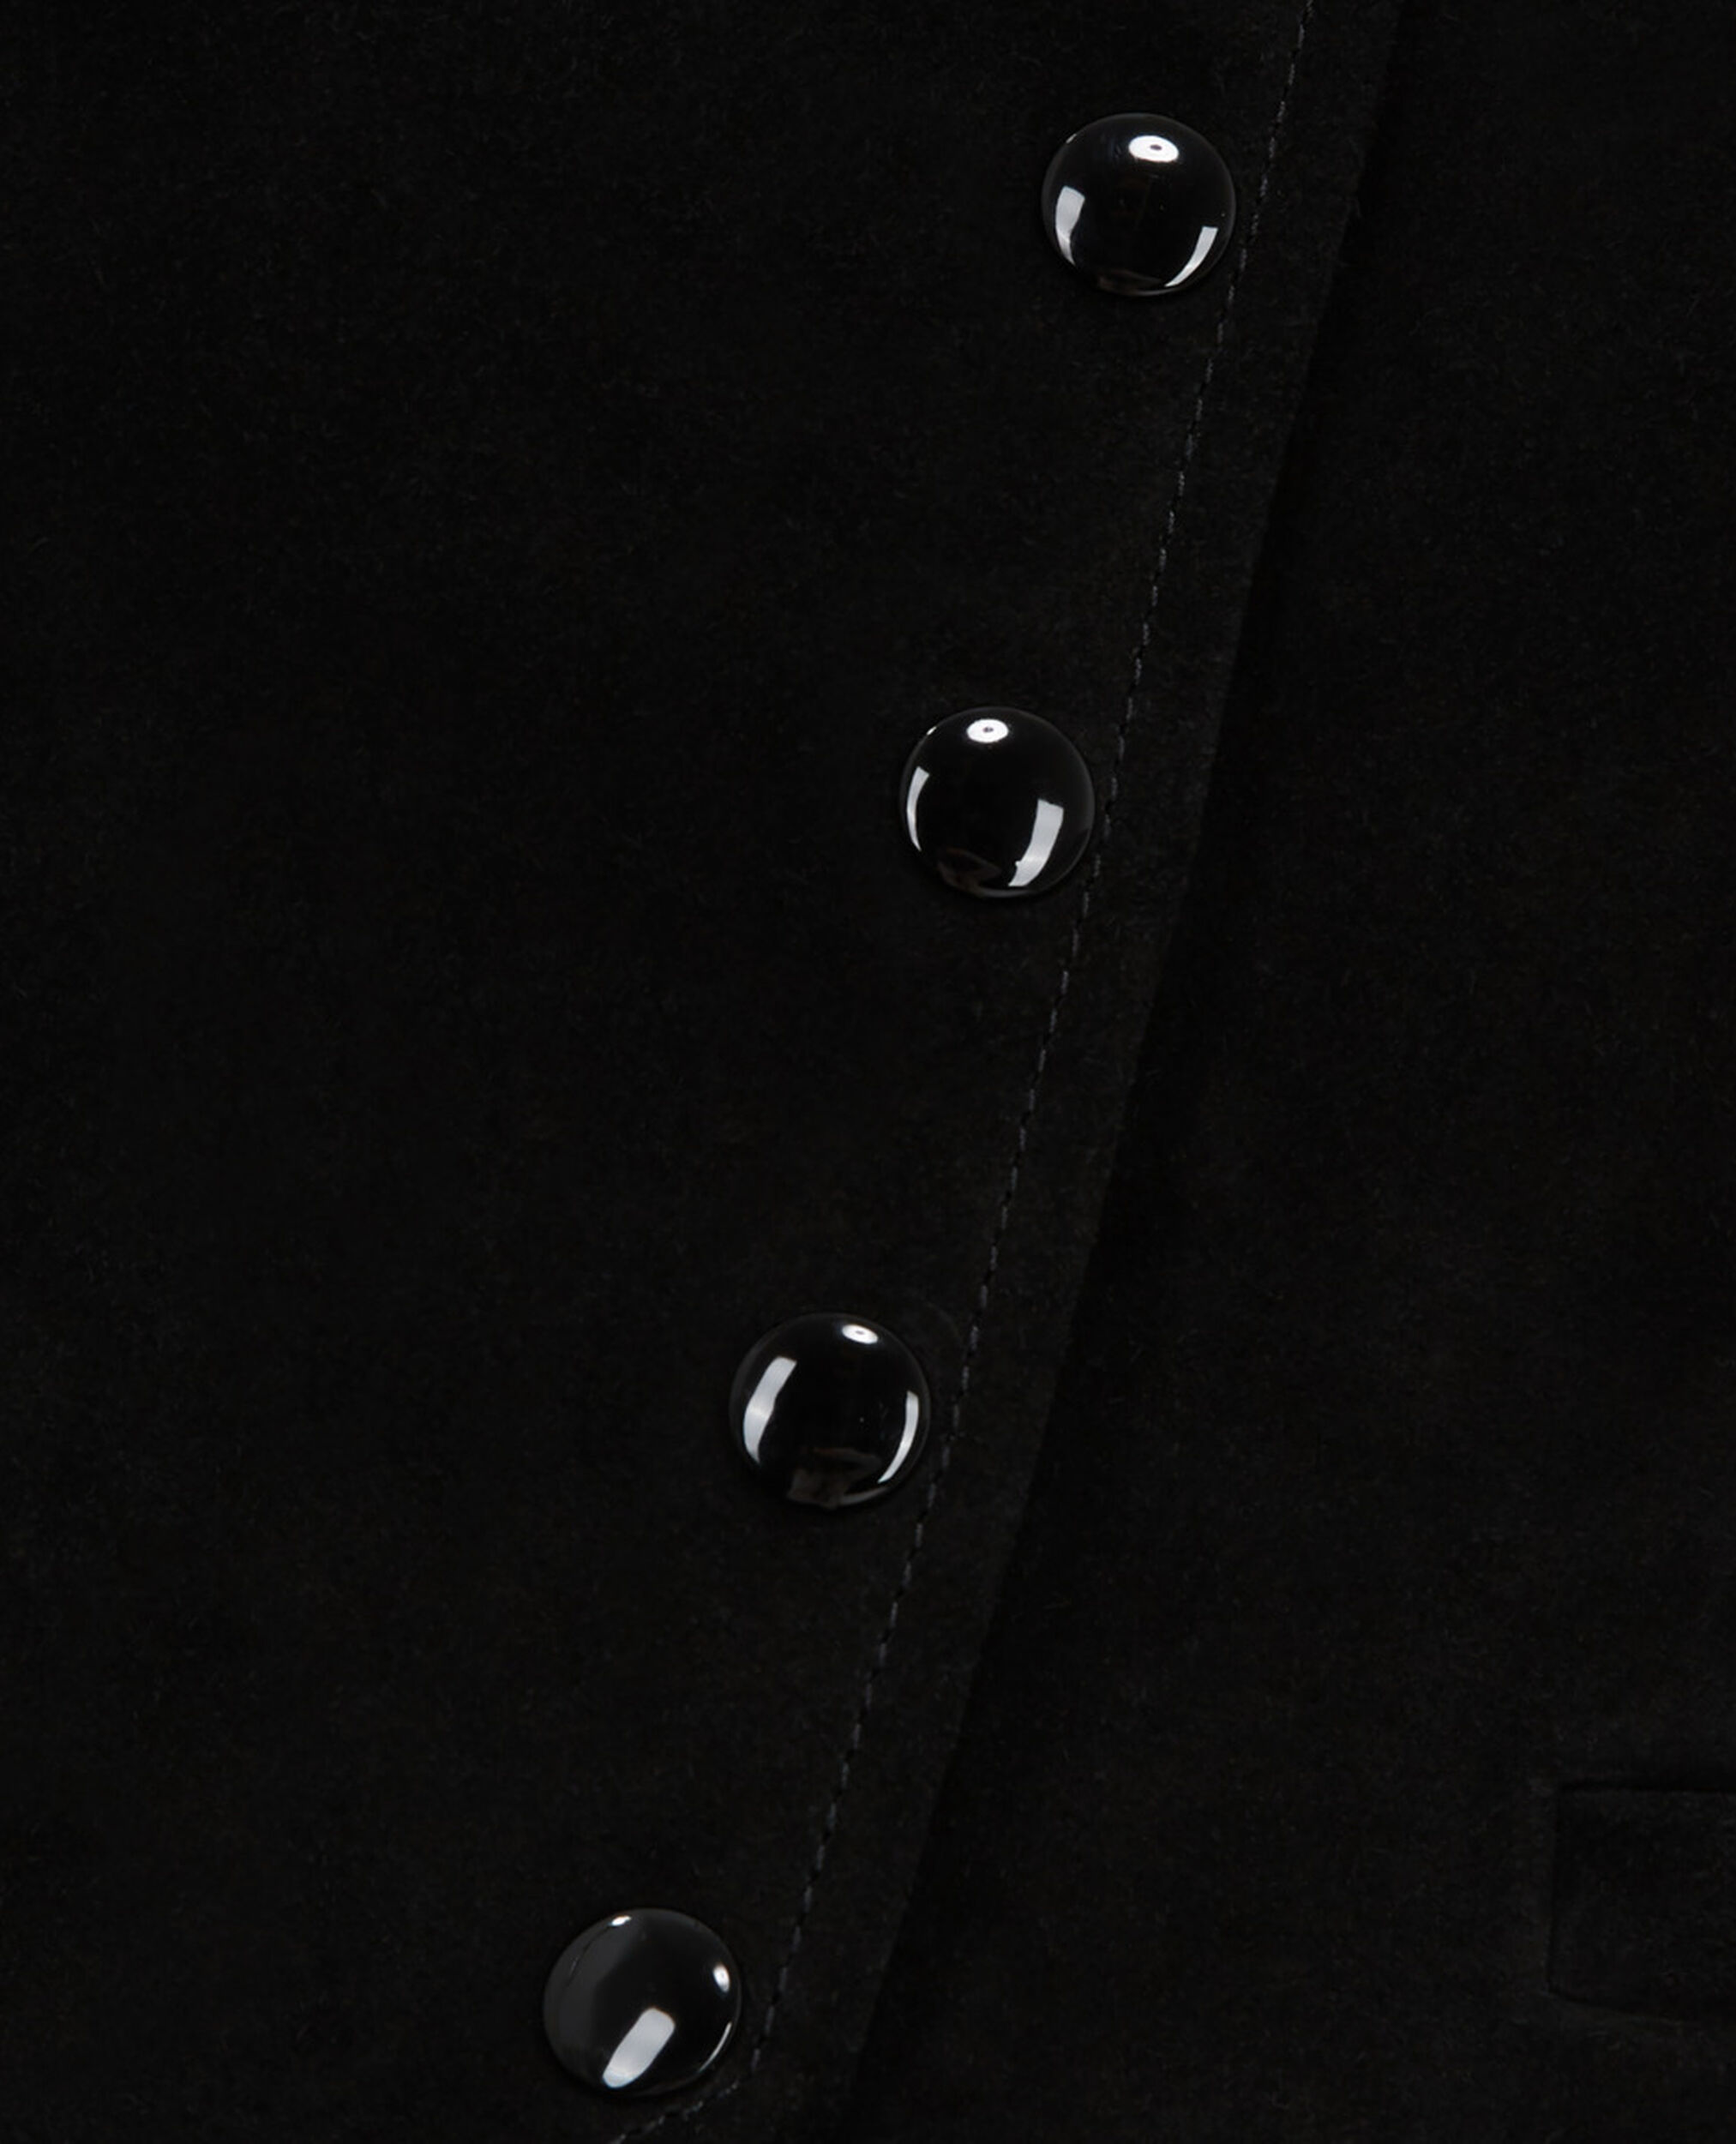 Black leather suit vest, BLACK, hi-res image number null